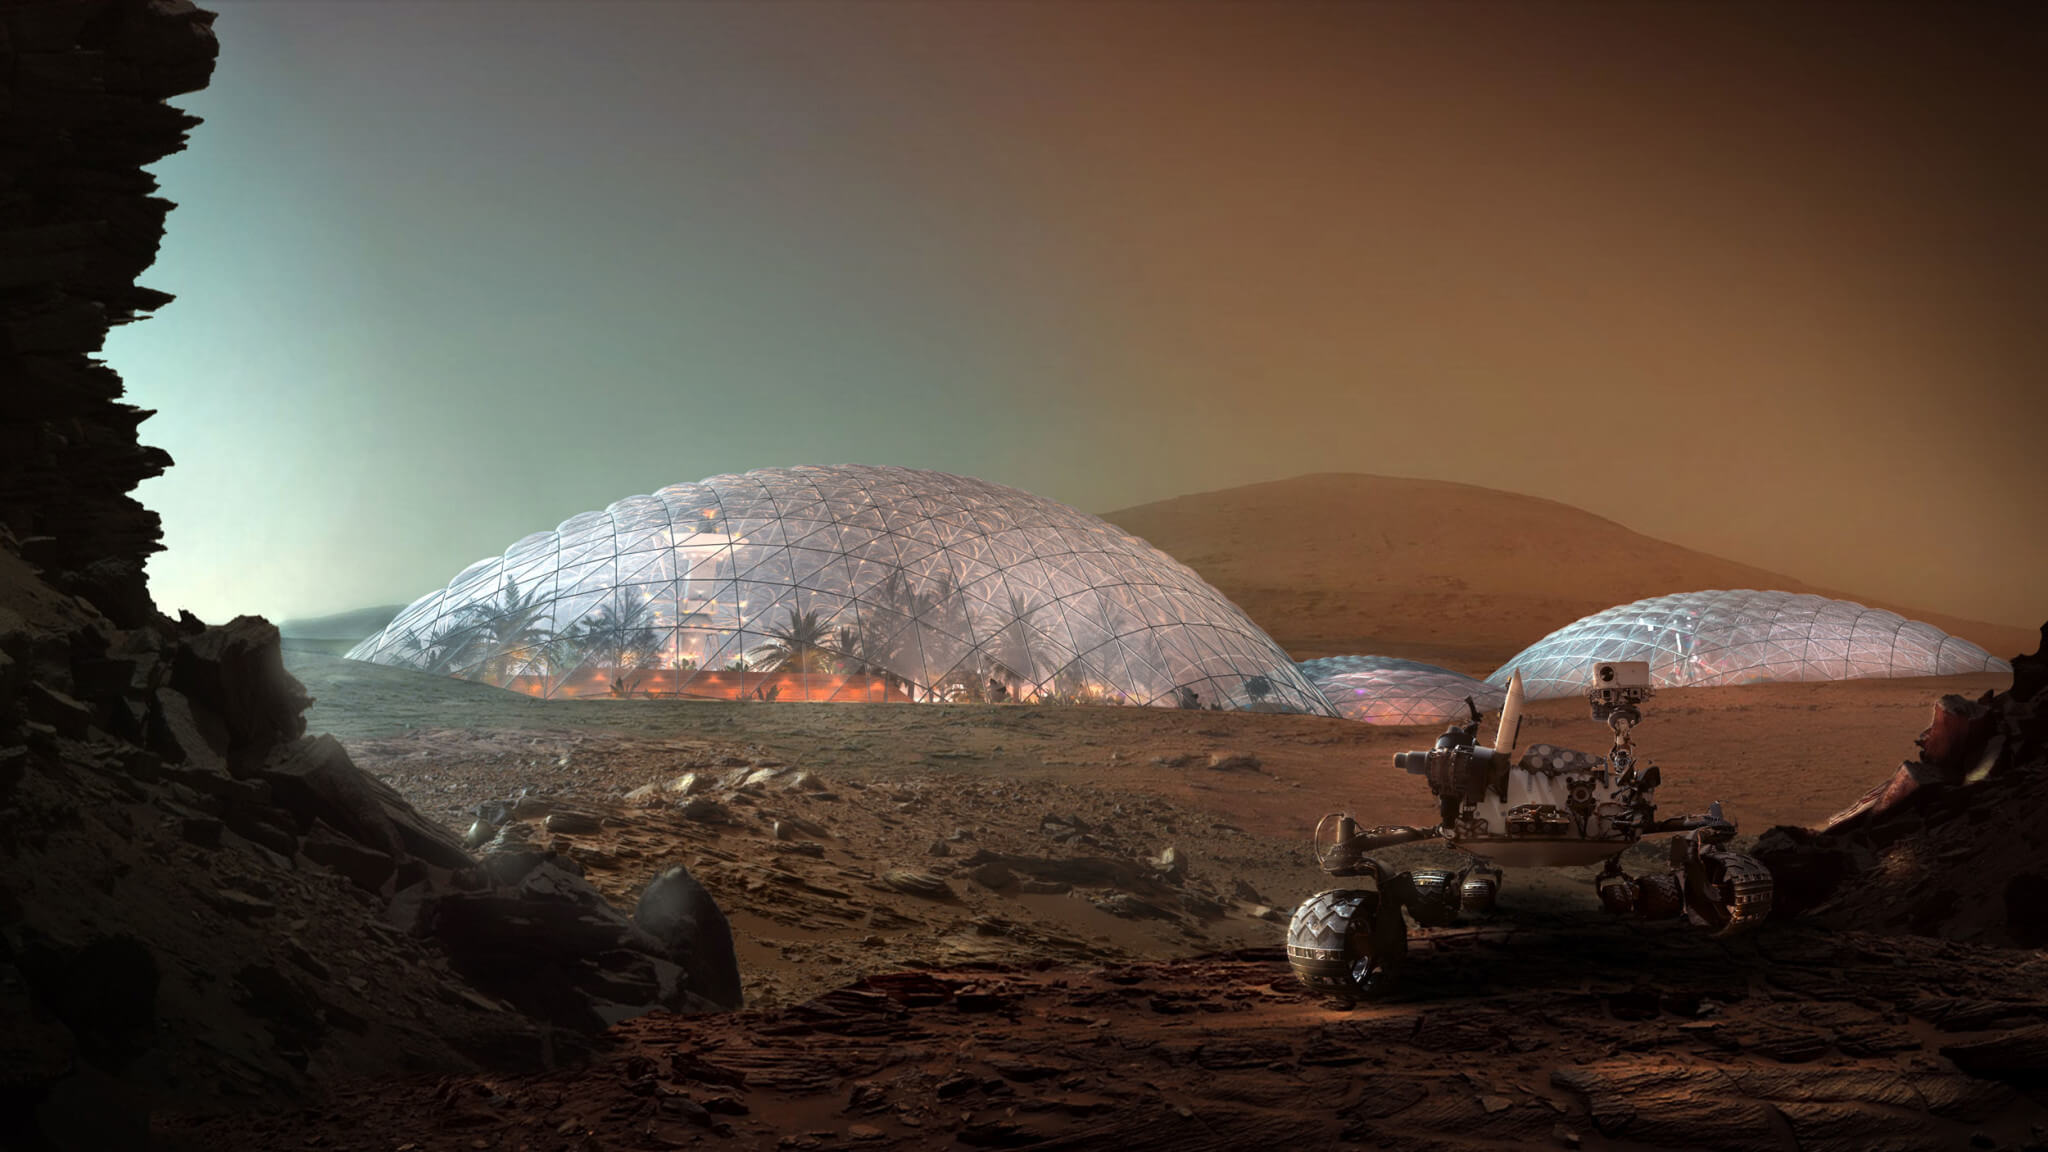 के लिए संचार के साथ पृथ्वी, मंगल ग्रह का निवासी उपनिवेशों का उपयोग करेगा लेजर